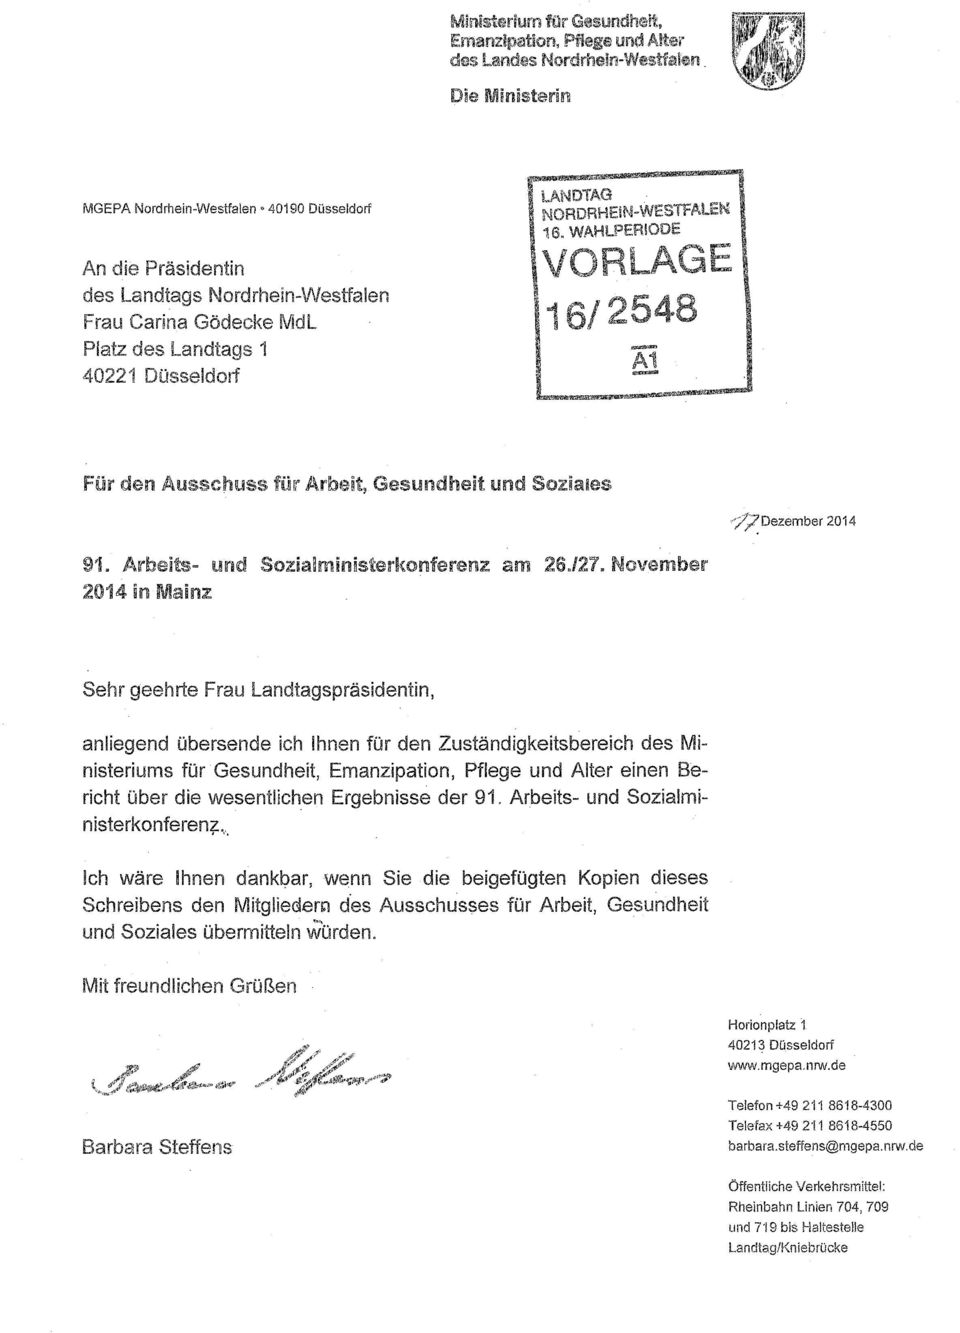 November 2014 in Mainz Sehr geehrte Frau Landtagspräsidentin, anliegend übersende ich Ihnen für den Zuständigkeitsbereich des Ministeriums für Gesundheit, Emanzipation, Pflege und Alter einen Bericht